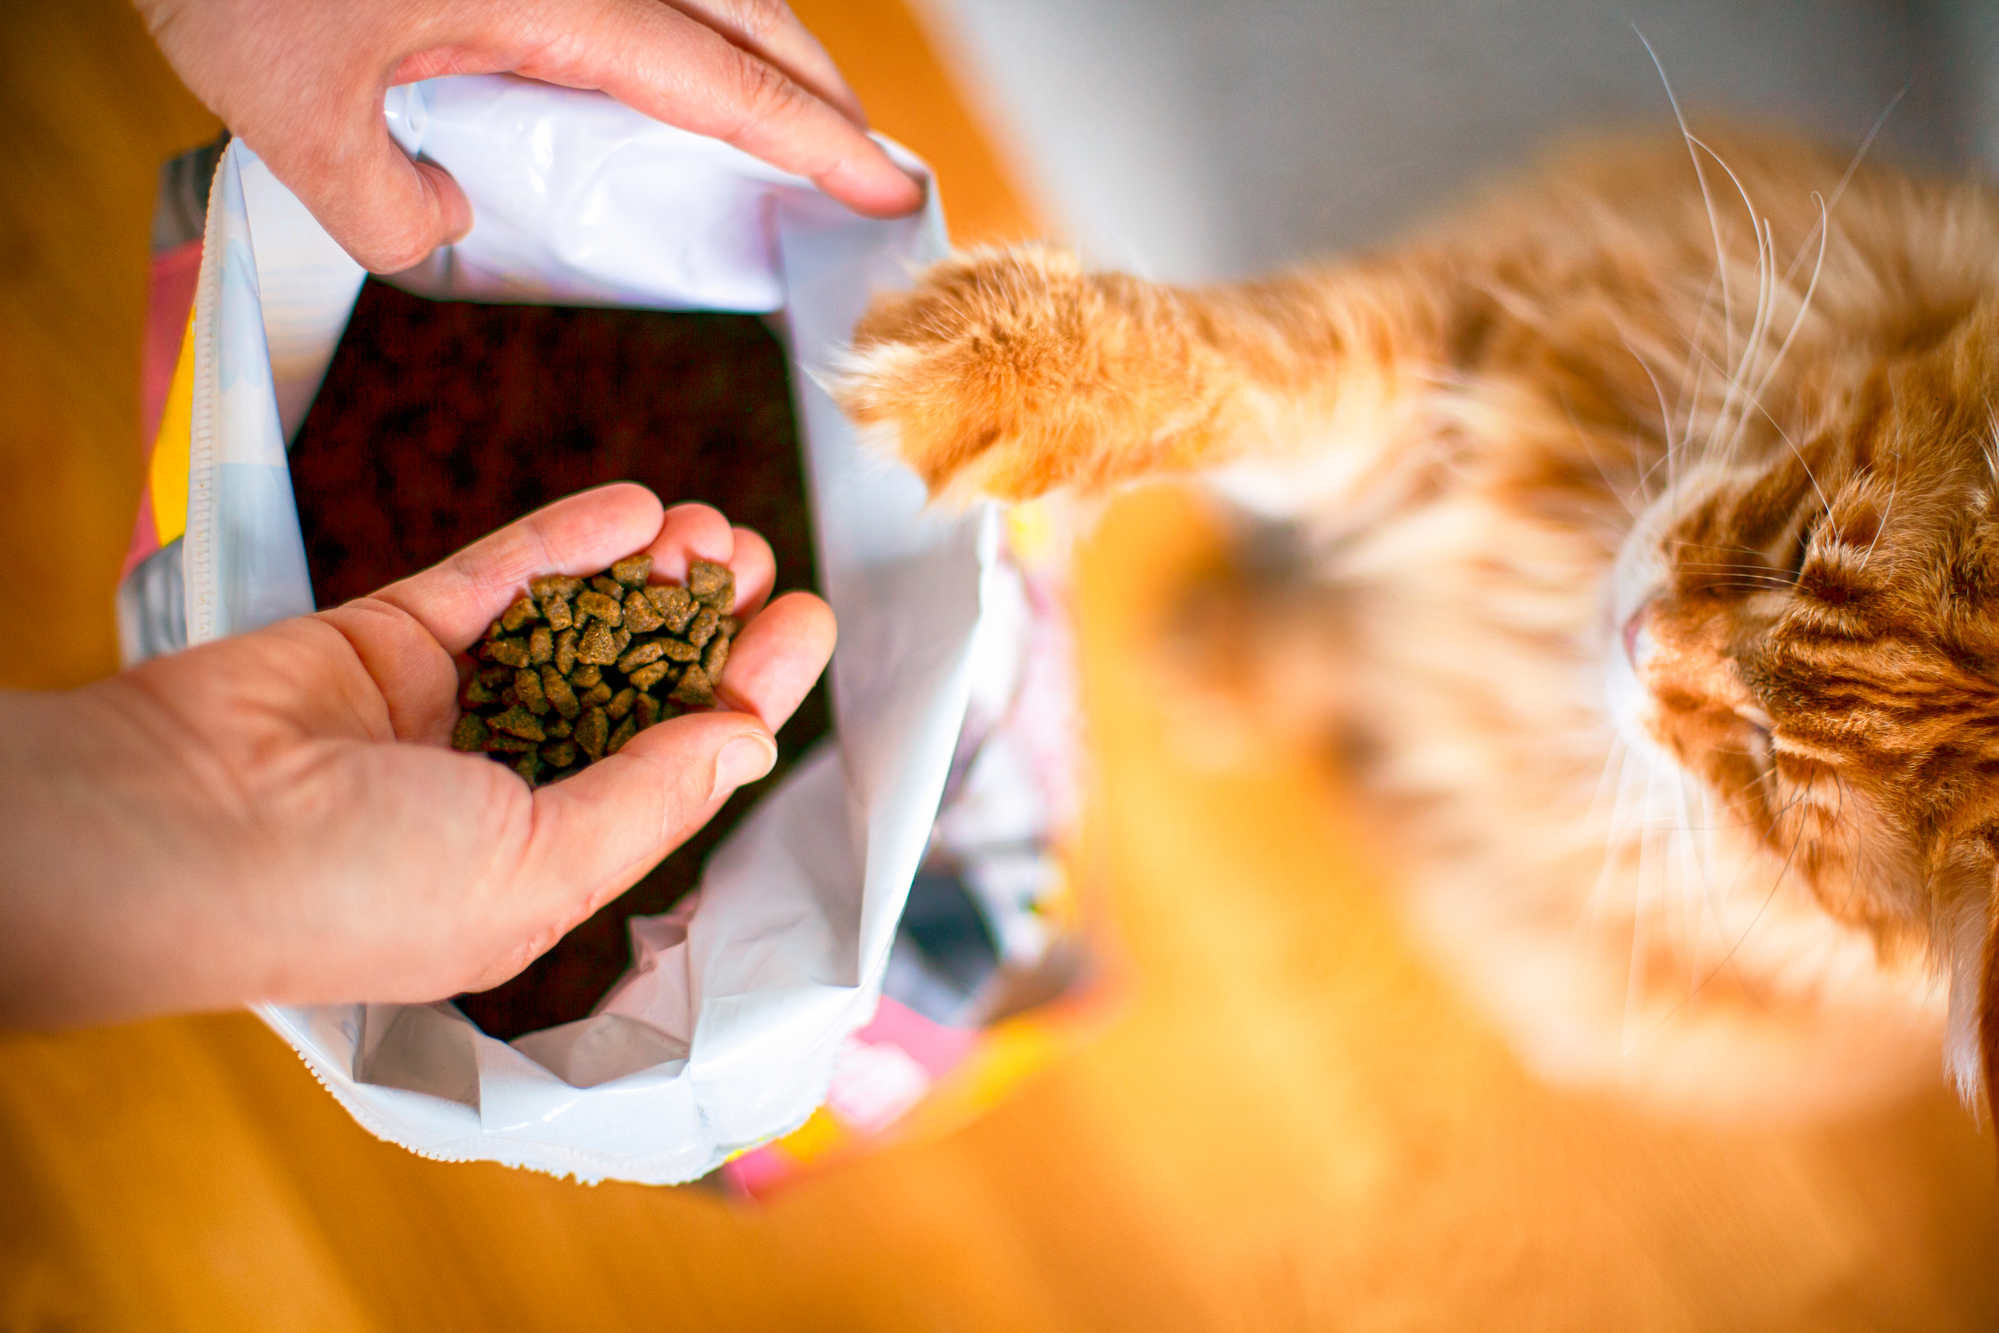 Gatto rosso mette una zampa sul sacco delle crocchette mentre una donne ne tira fuori una manciata con le mani; concept: cibo per gatti, cibo secco, pet food